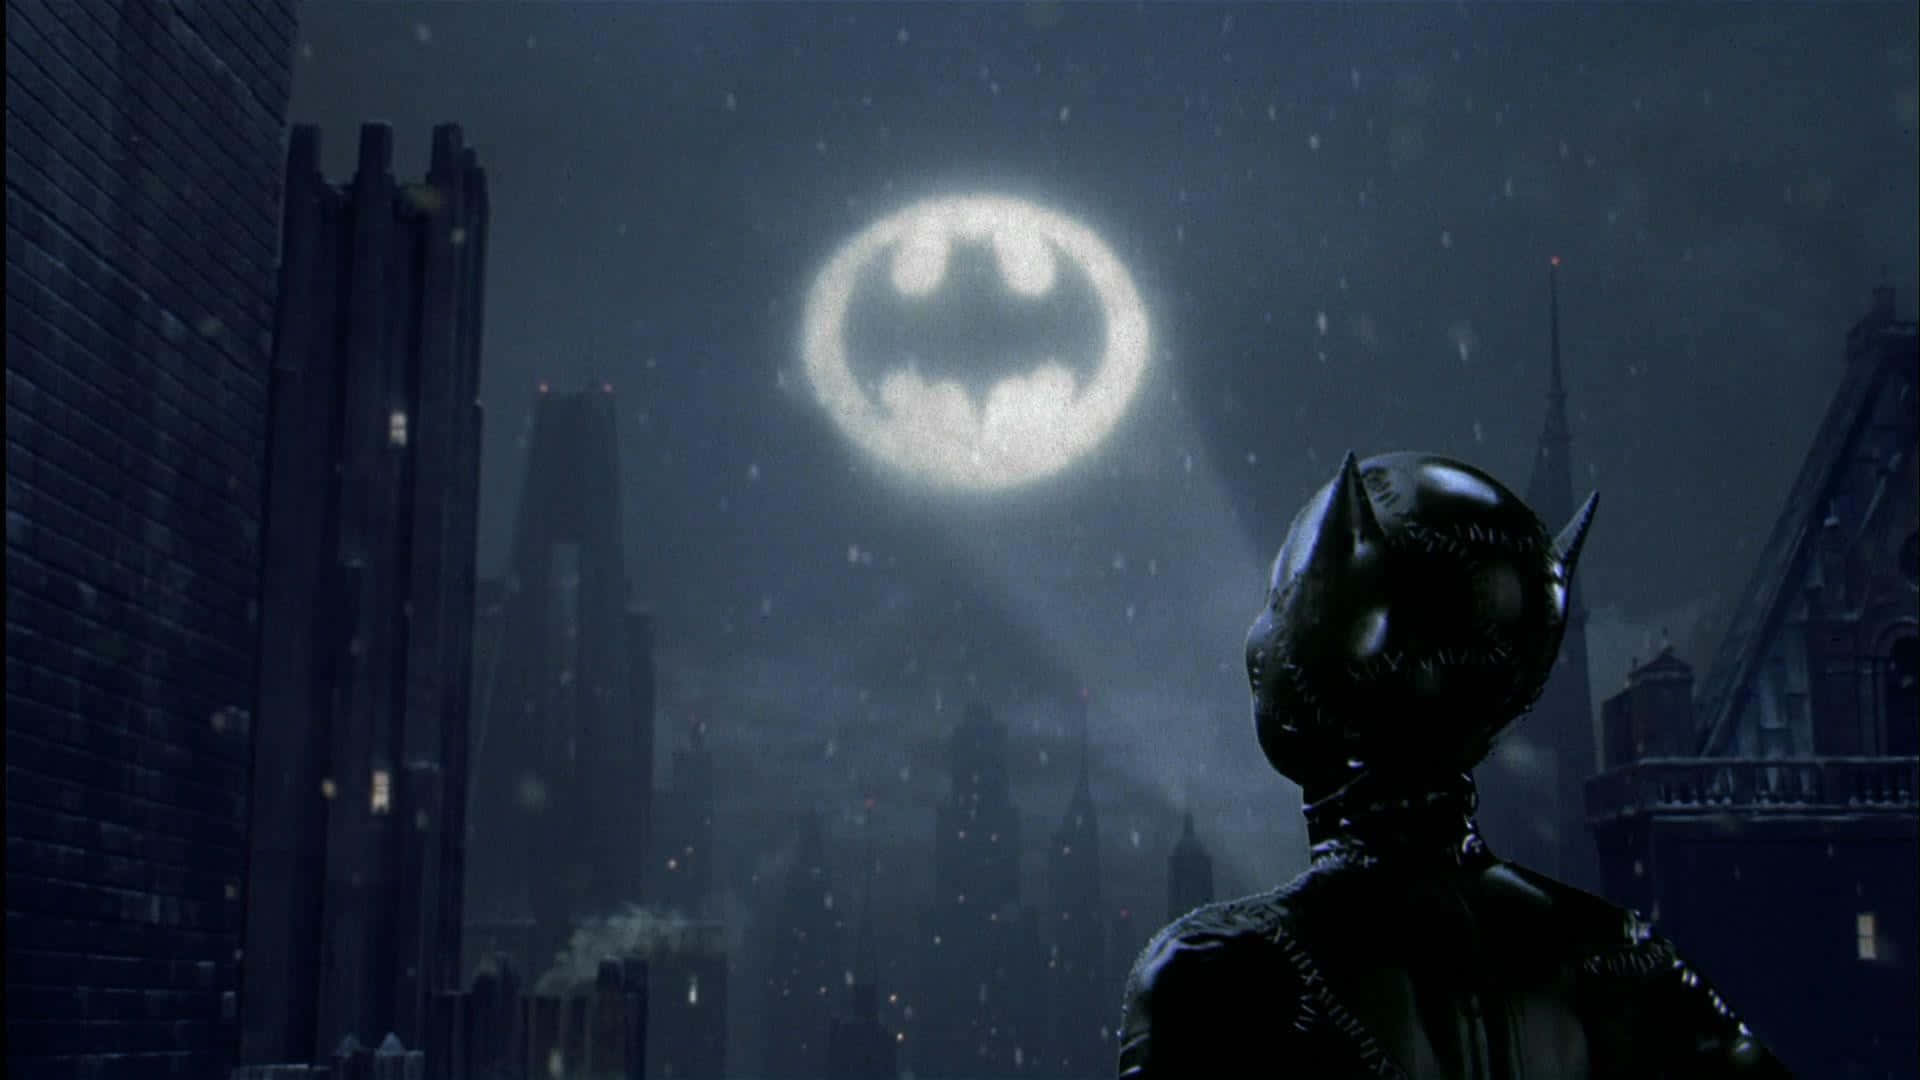 The Iconic Bat-signal Illuminating The Night Sky Over Gotham City